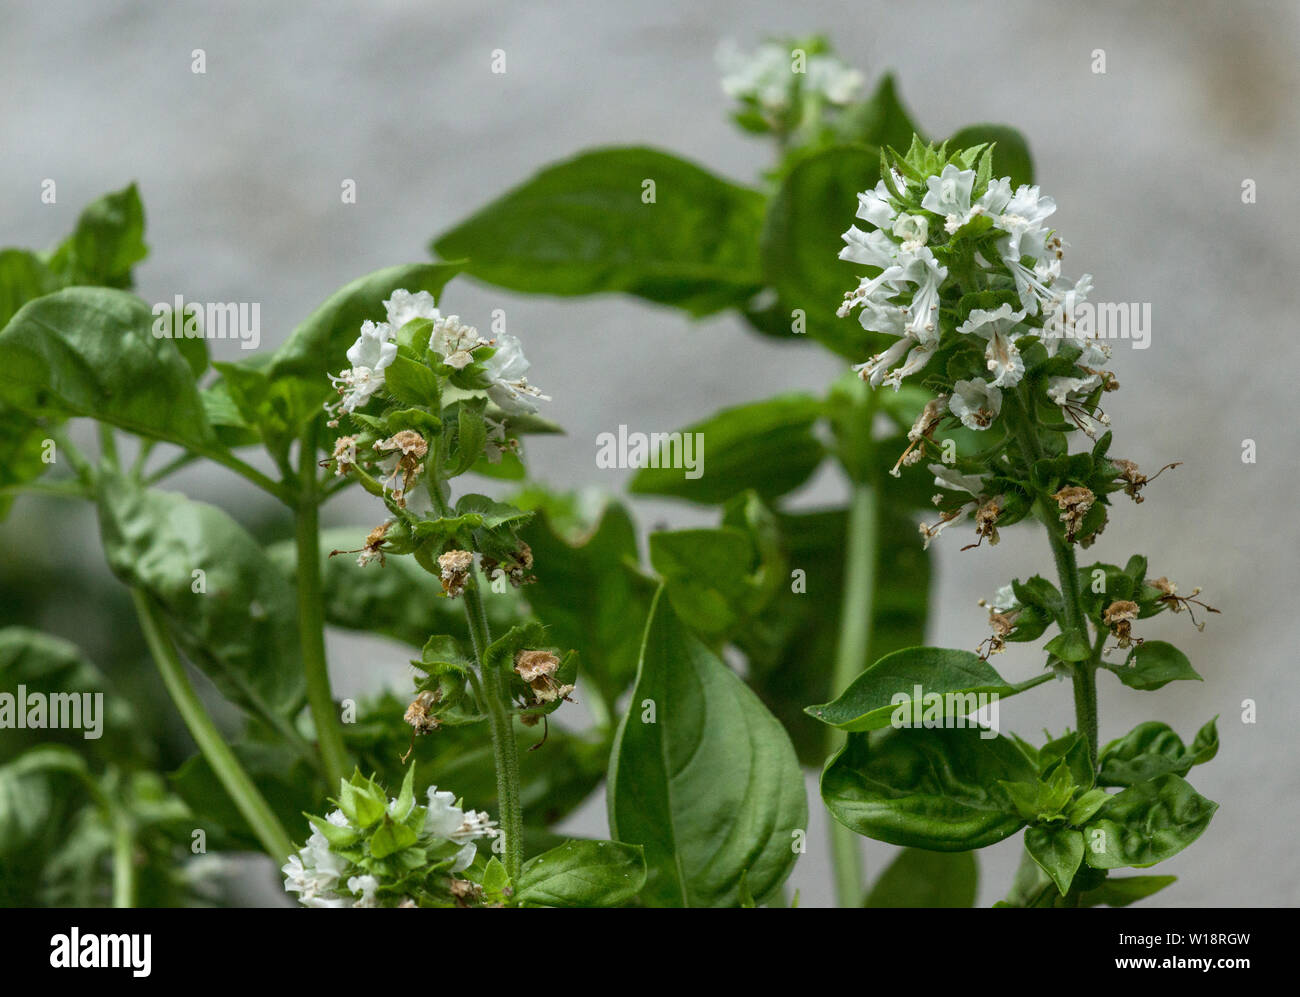 La hierba dulce, la albahaca (Ocimum basilicum) es una hierba medicinal y culinario encontrado ahora en todo el mundo. Foto de stock